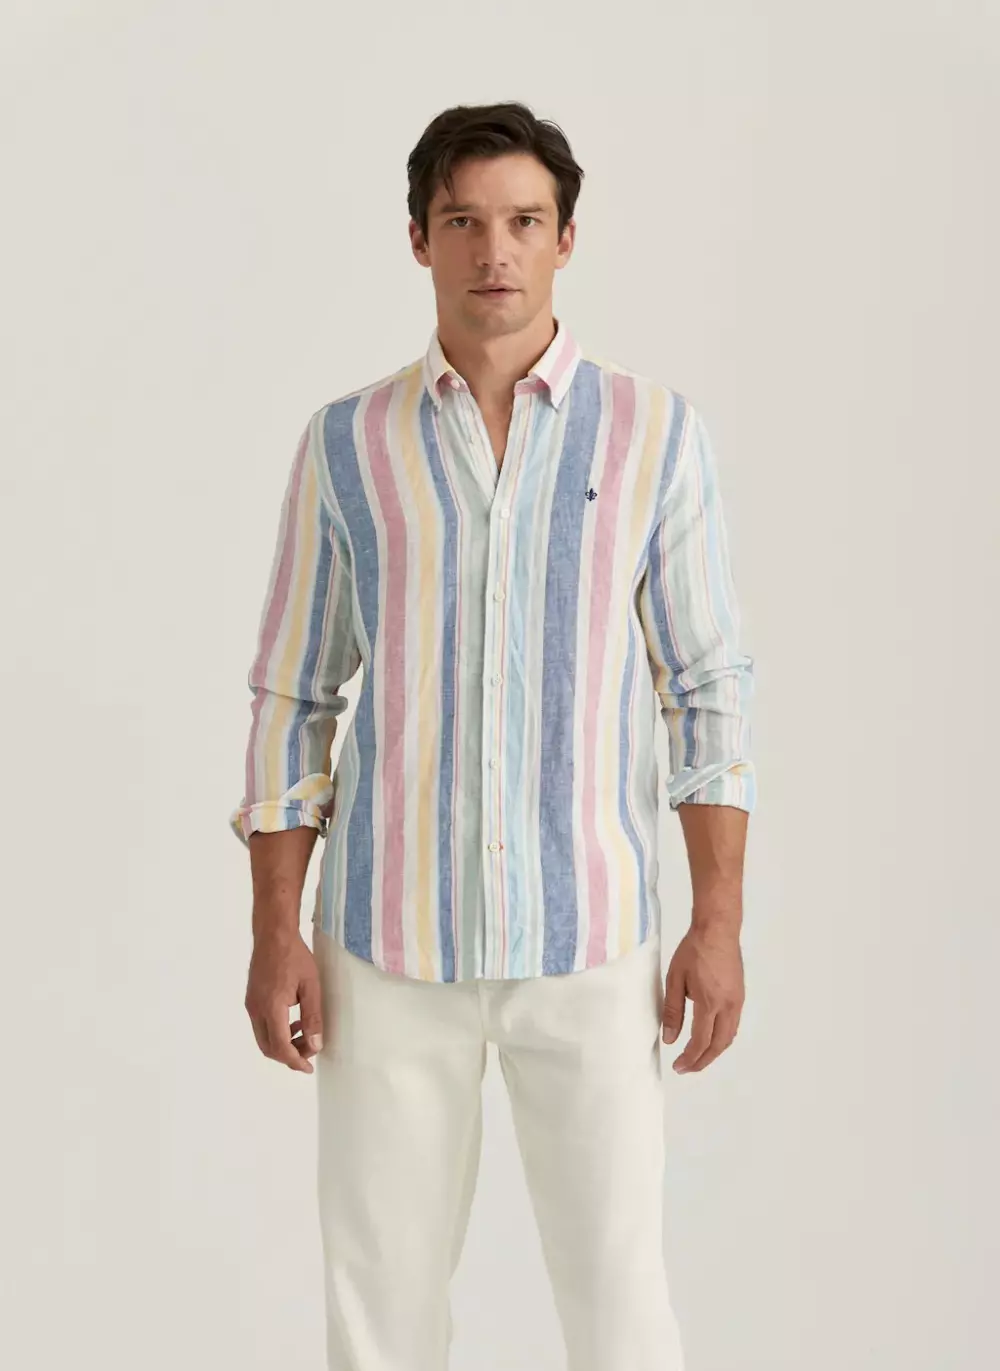 Morris - Linen Happy Stripe Shirt-Classic Fit - 55 Light blue, SKJORTER, FRITIDSKJORTER, MORRIS STOCKHOLM, 801687_055, HERRE, 55 Light blue